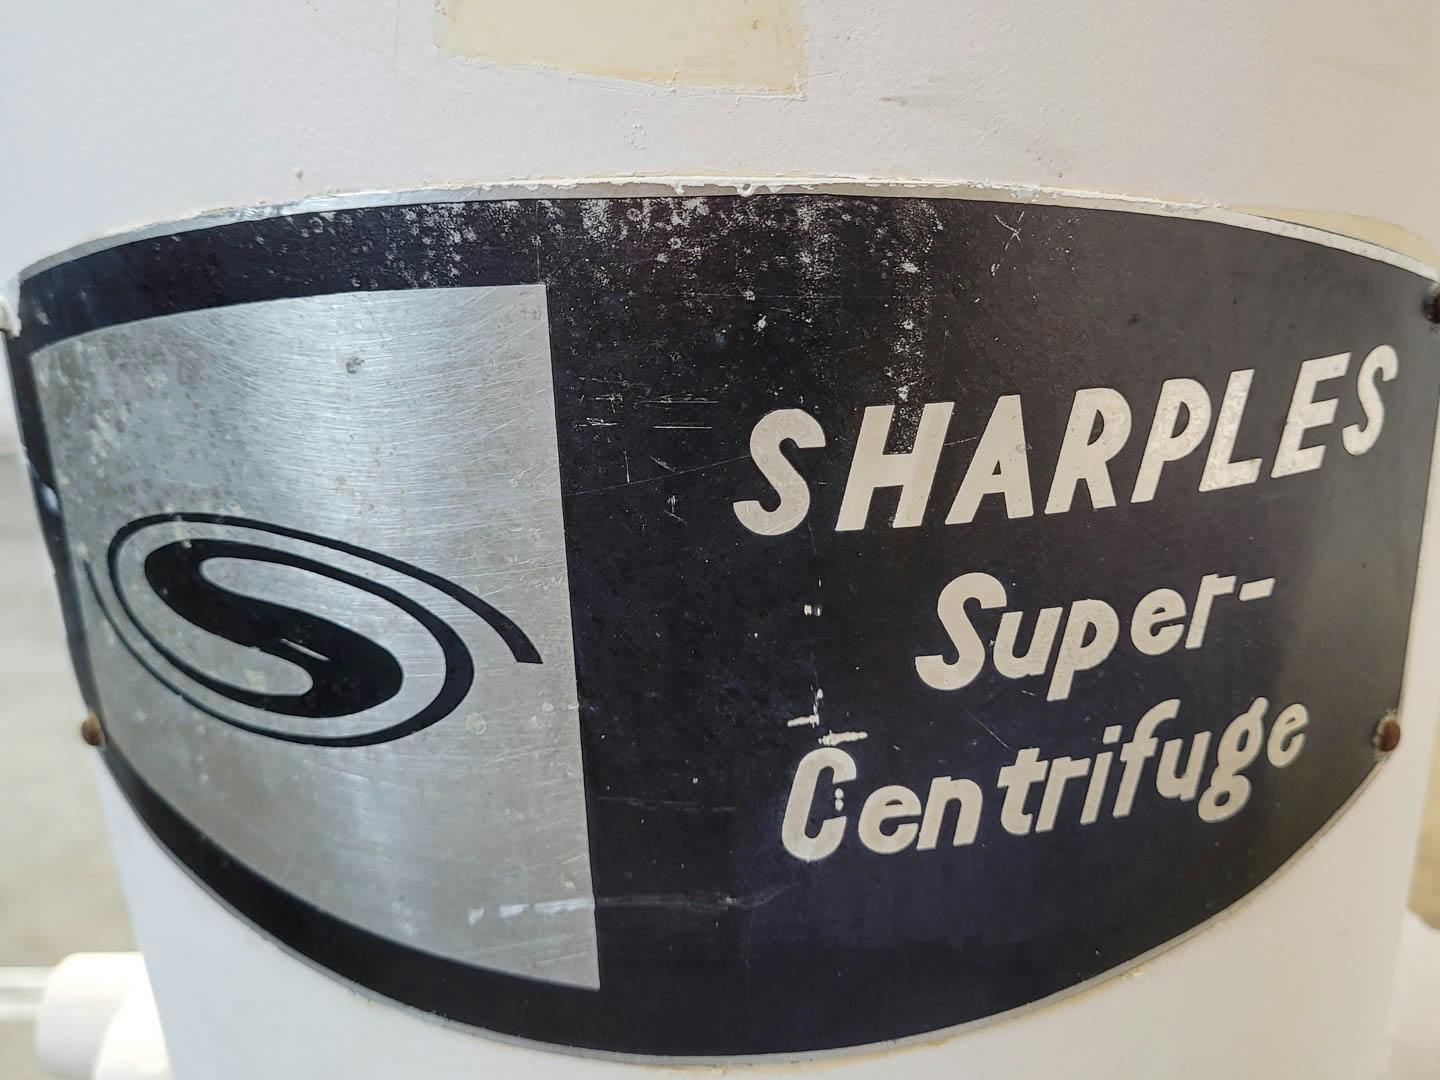 Sharples MV8816 "super centrifuge" - Separador - image 4